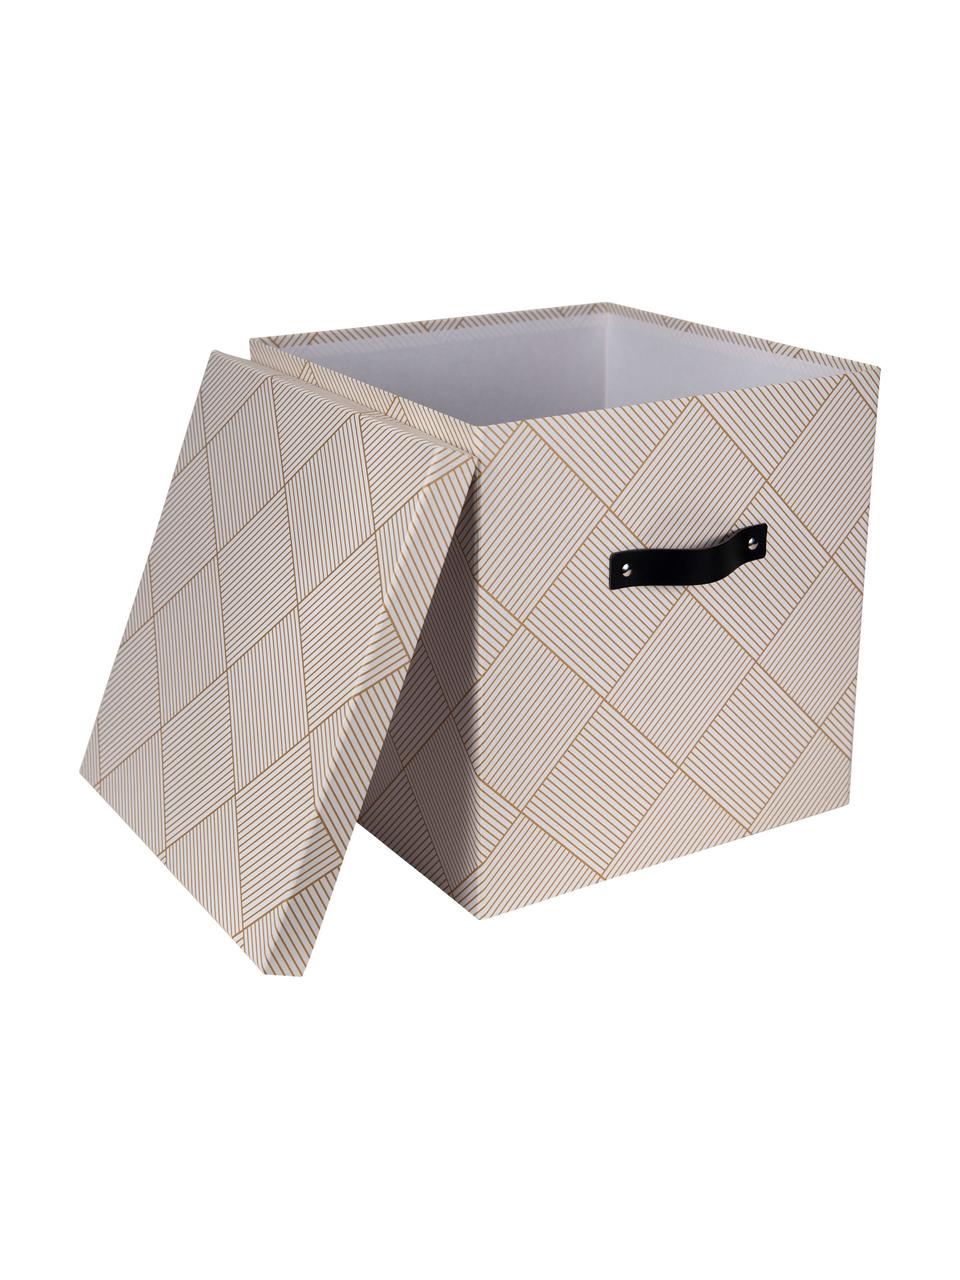 Skladovací box Texas, Zlatá, bílá, Š 32 cm, V 31 cm